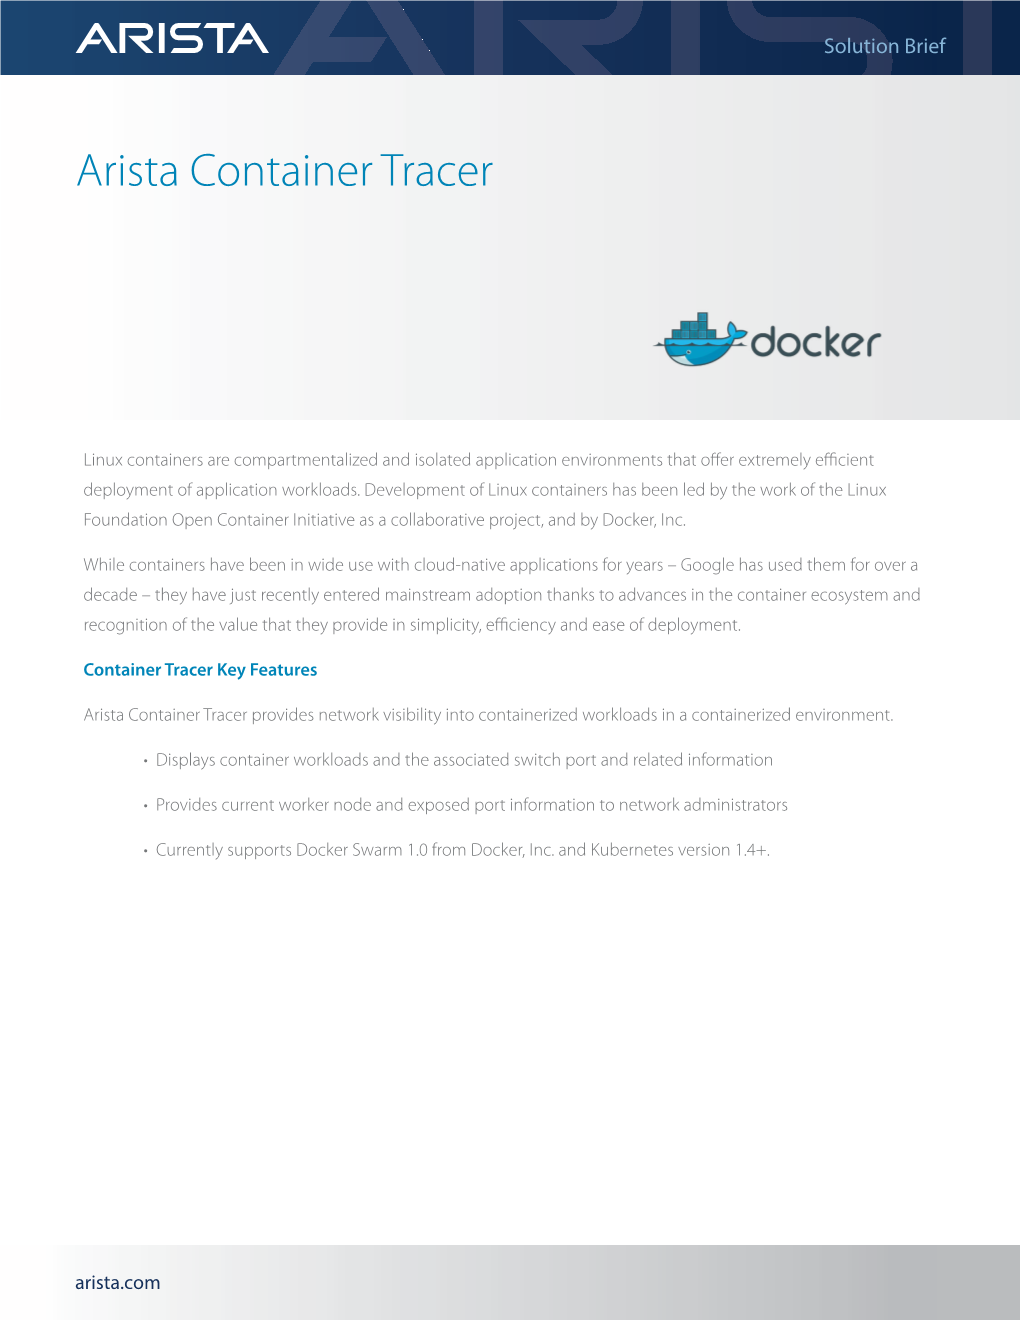 Arista Container Tracer